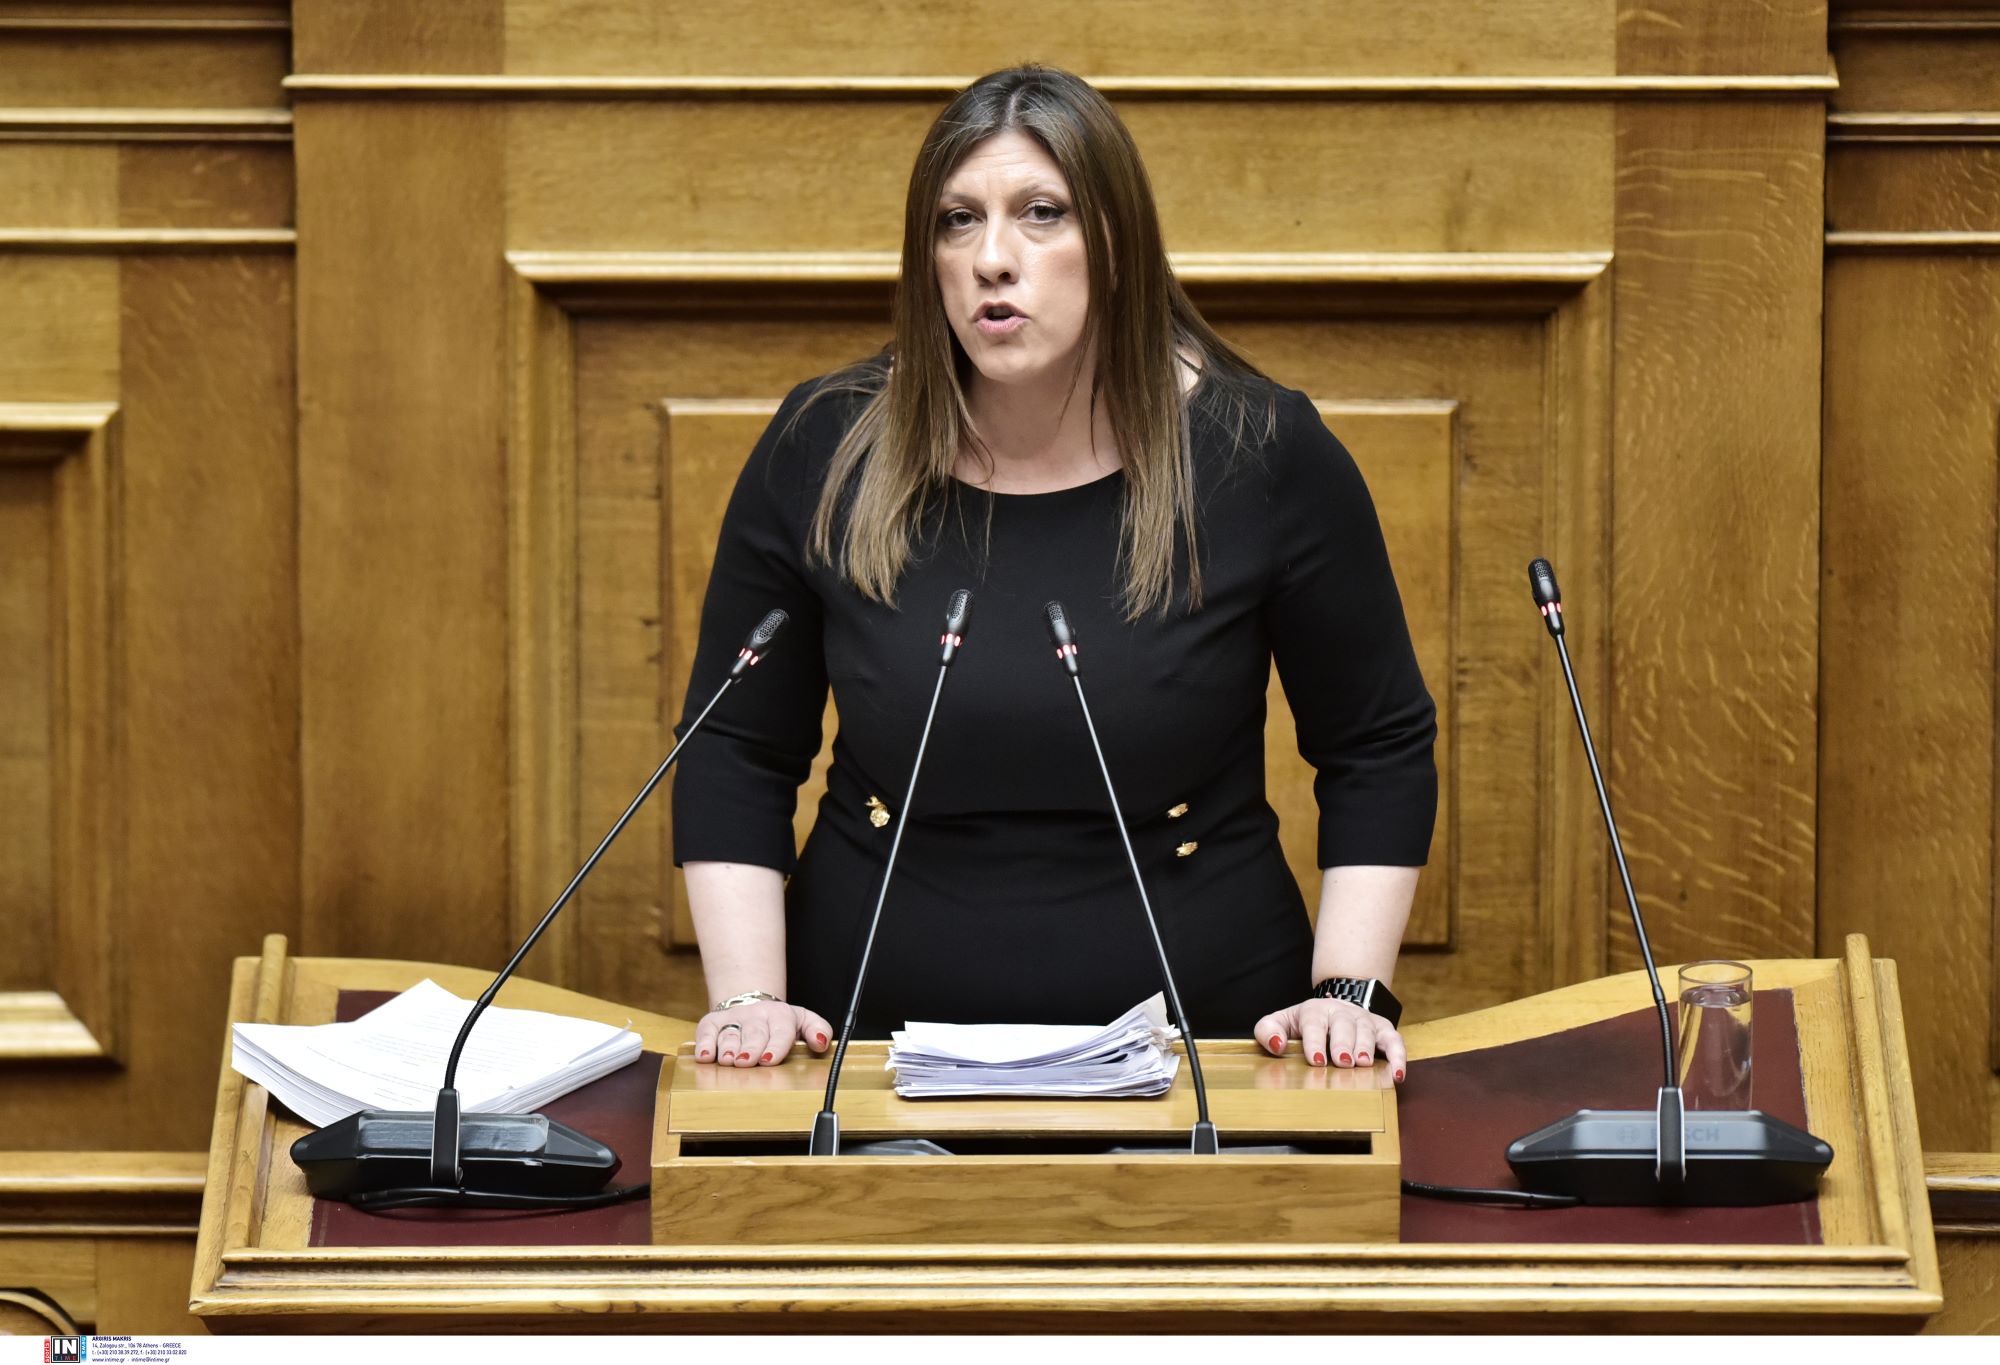 ζωή κωνσταντοπούλου: δεν έχουν θέση στο κοινοβούλιο χειροδικία, ύβρεις και αντικοινοβουλευτικές συμπεριφορές